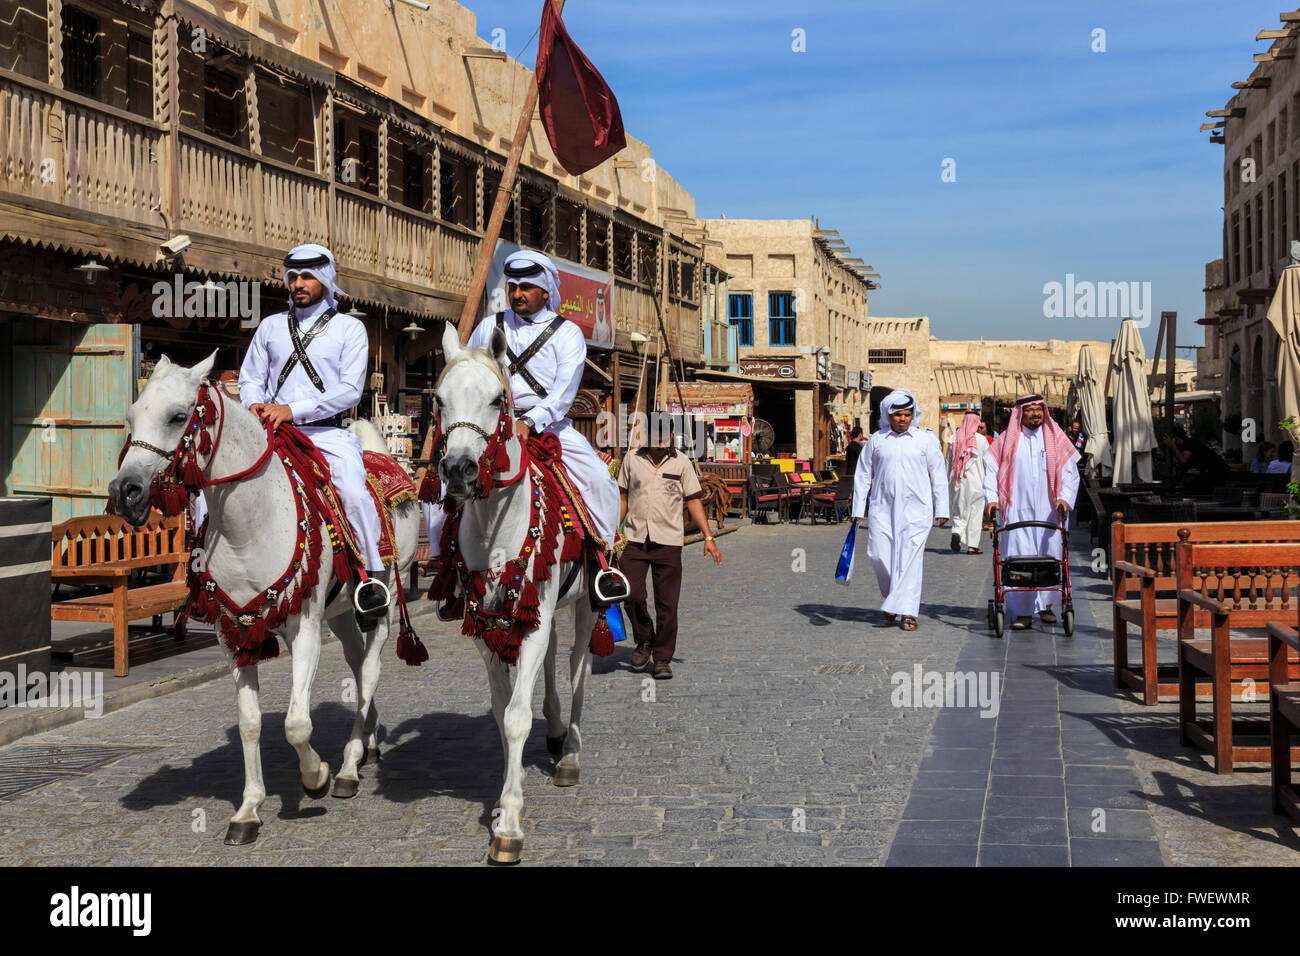 Concurrida calle escena con efectivos de la policía montada y vestidos tradicionalmente compradores, Souq Waqif, Doha, Qatar, Oriente Medio Foto de stock